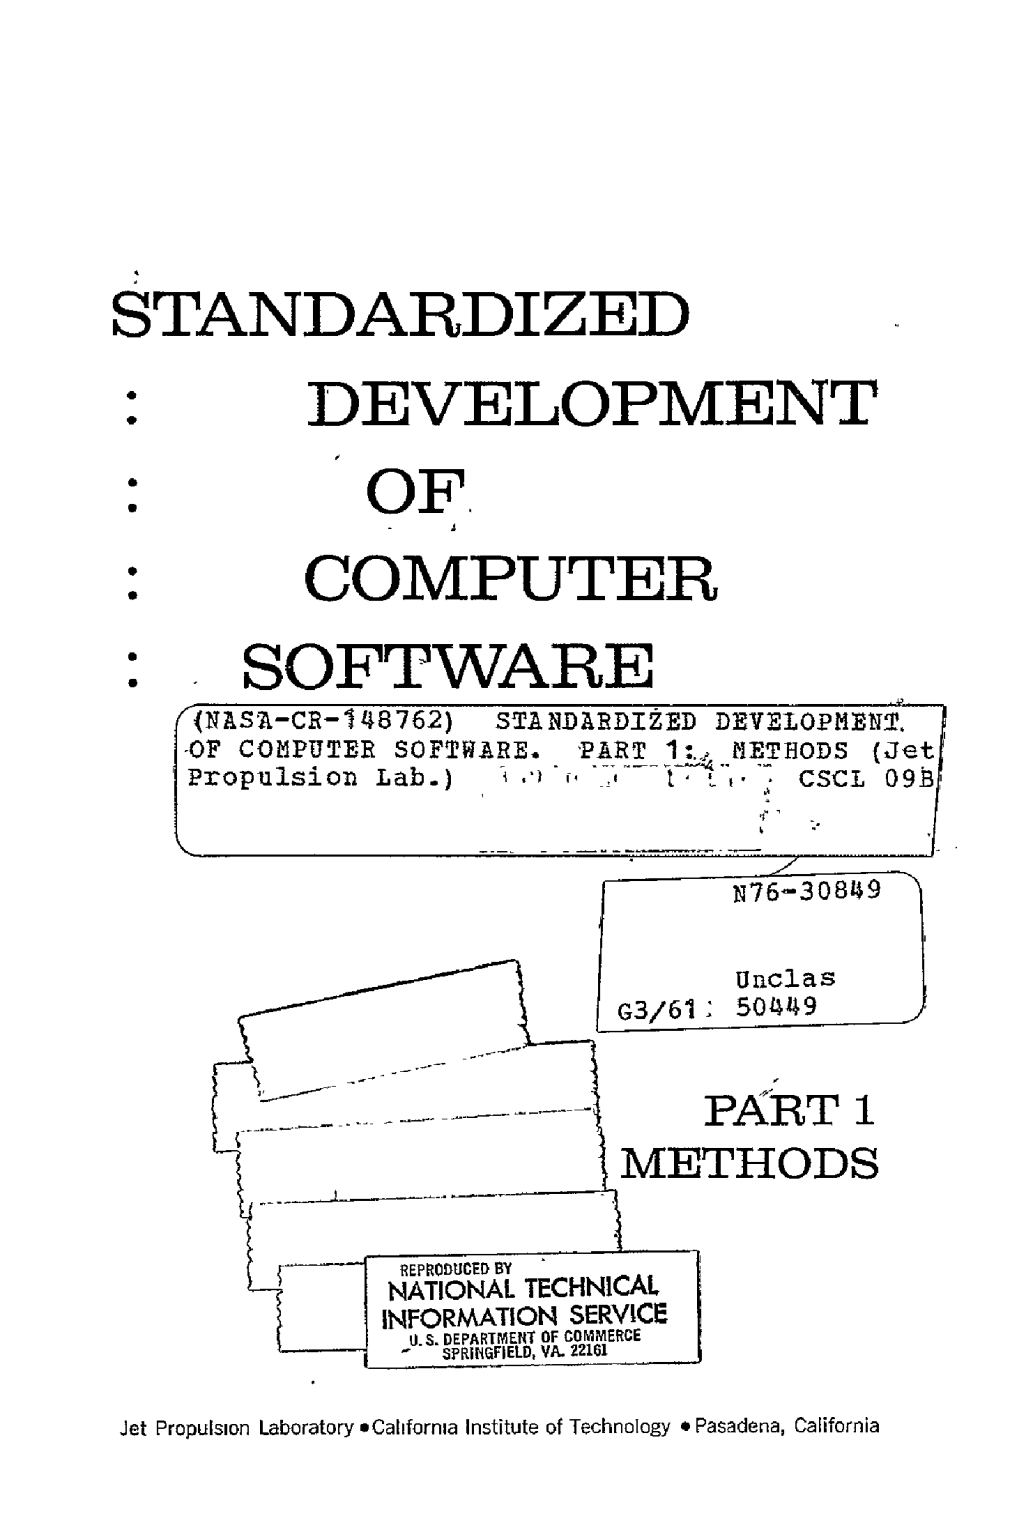 Development of Computer Software (Nas'a-Cr-148762) Standardized Development